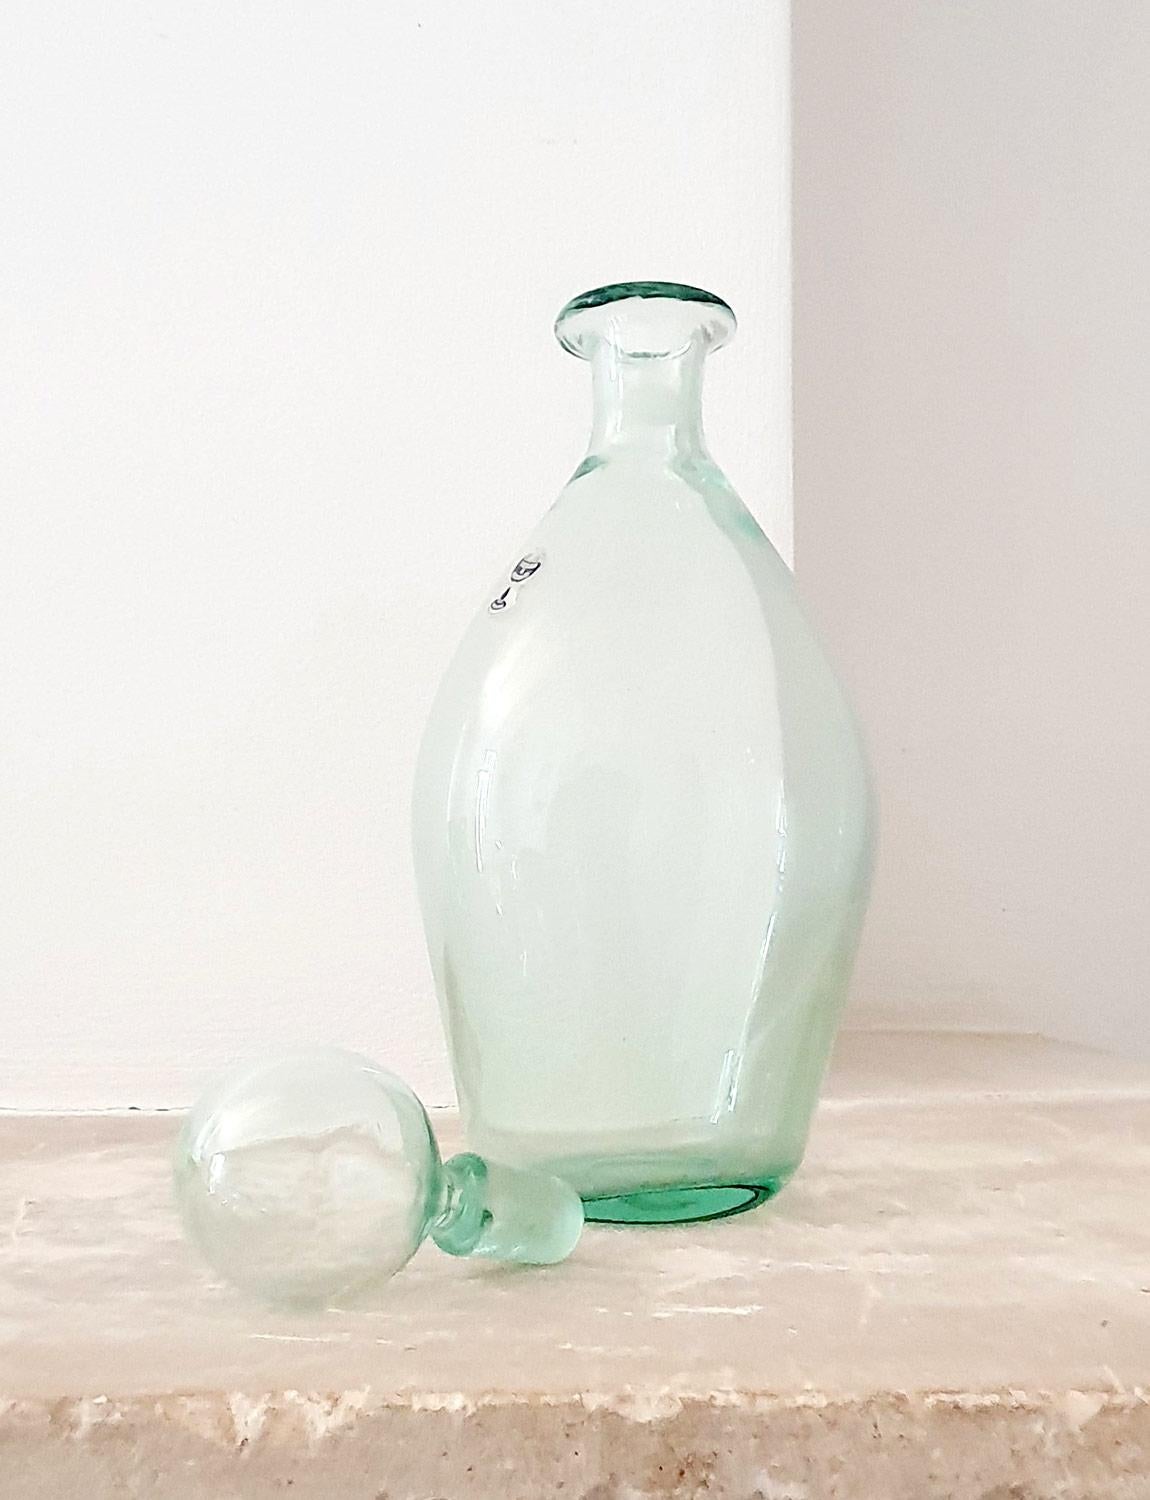 Une magnifique bouteille / carafe verte pâle soufflée à la main avec un bouchon soufflé à la main par le fourneau vénitien, Nason Moretti. La bouteille porte encore l'étiquette de Nason Moretti. Il s'agit d'une belle pièce en excellent état.